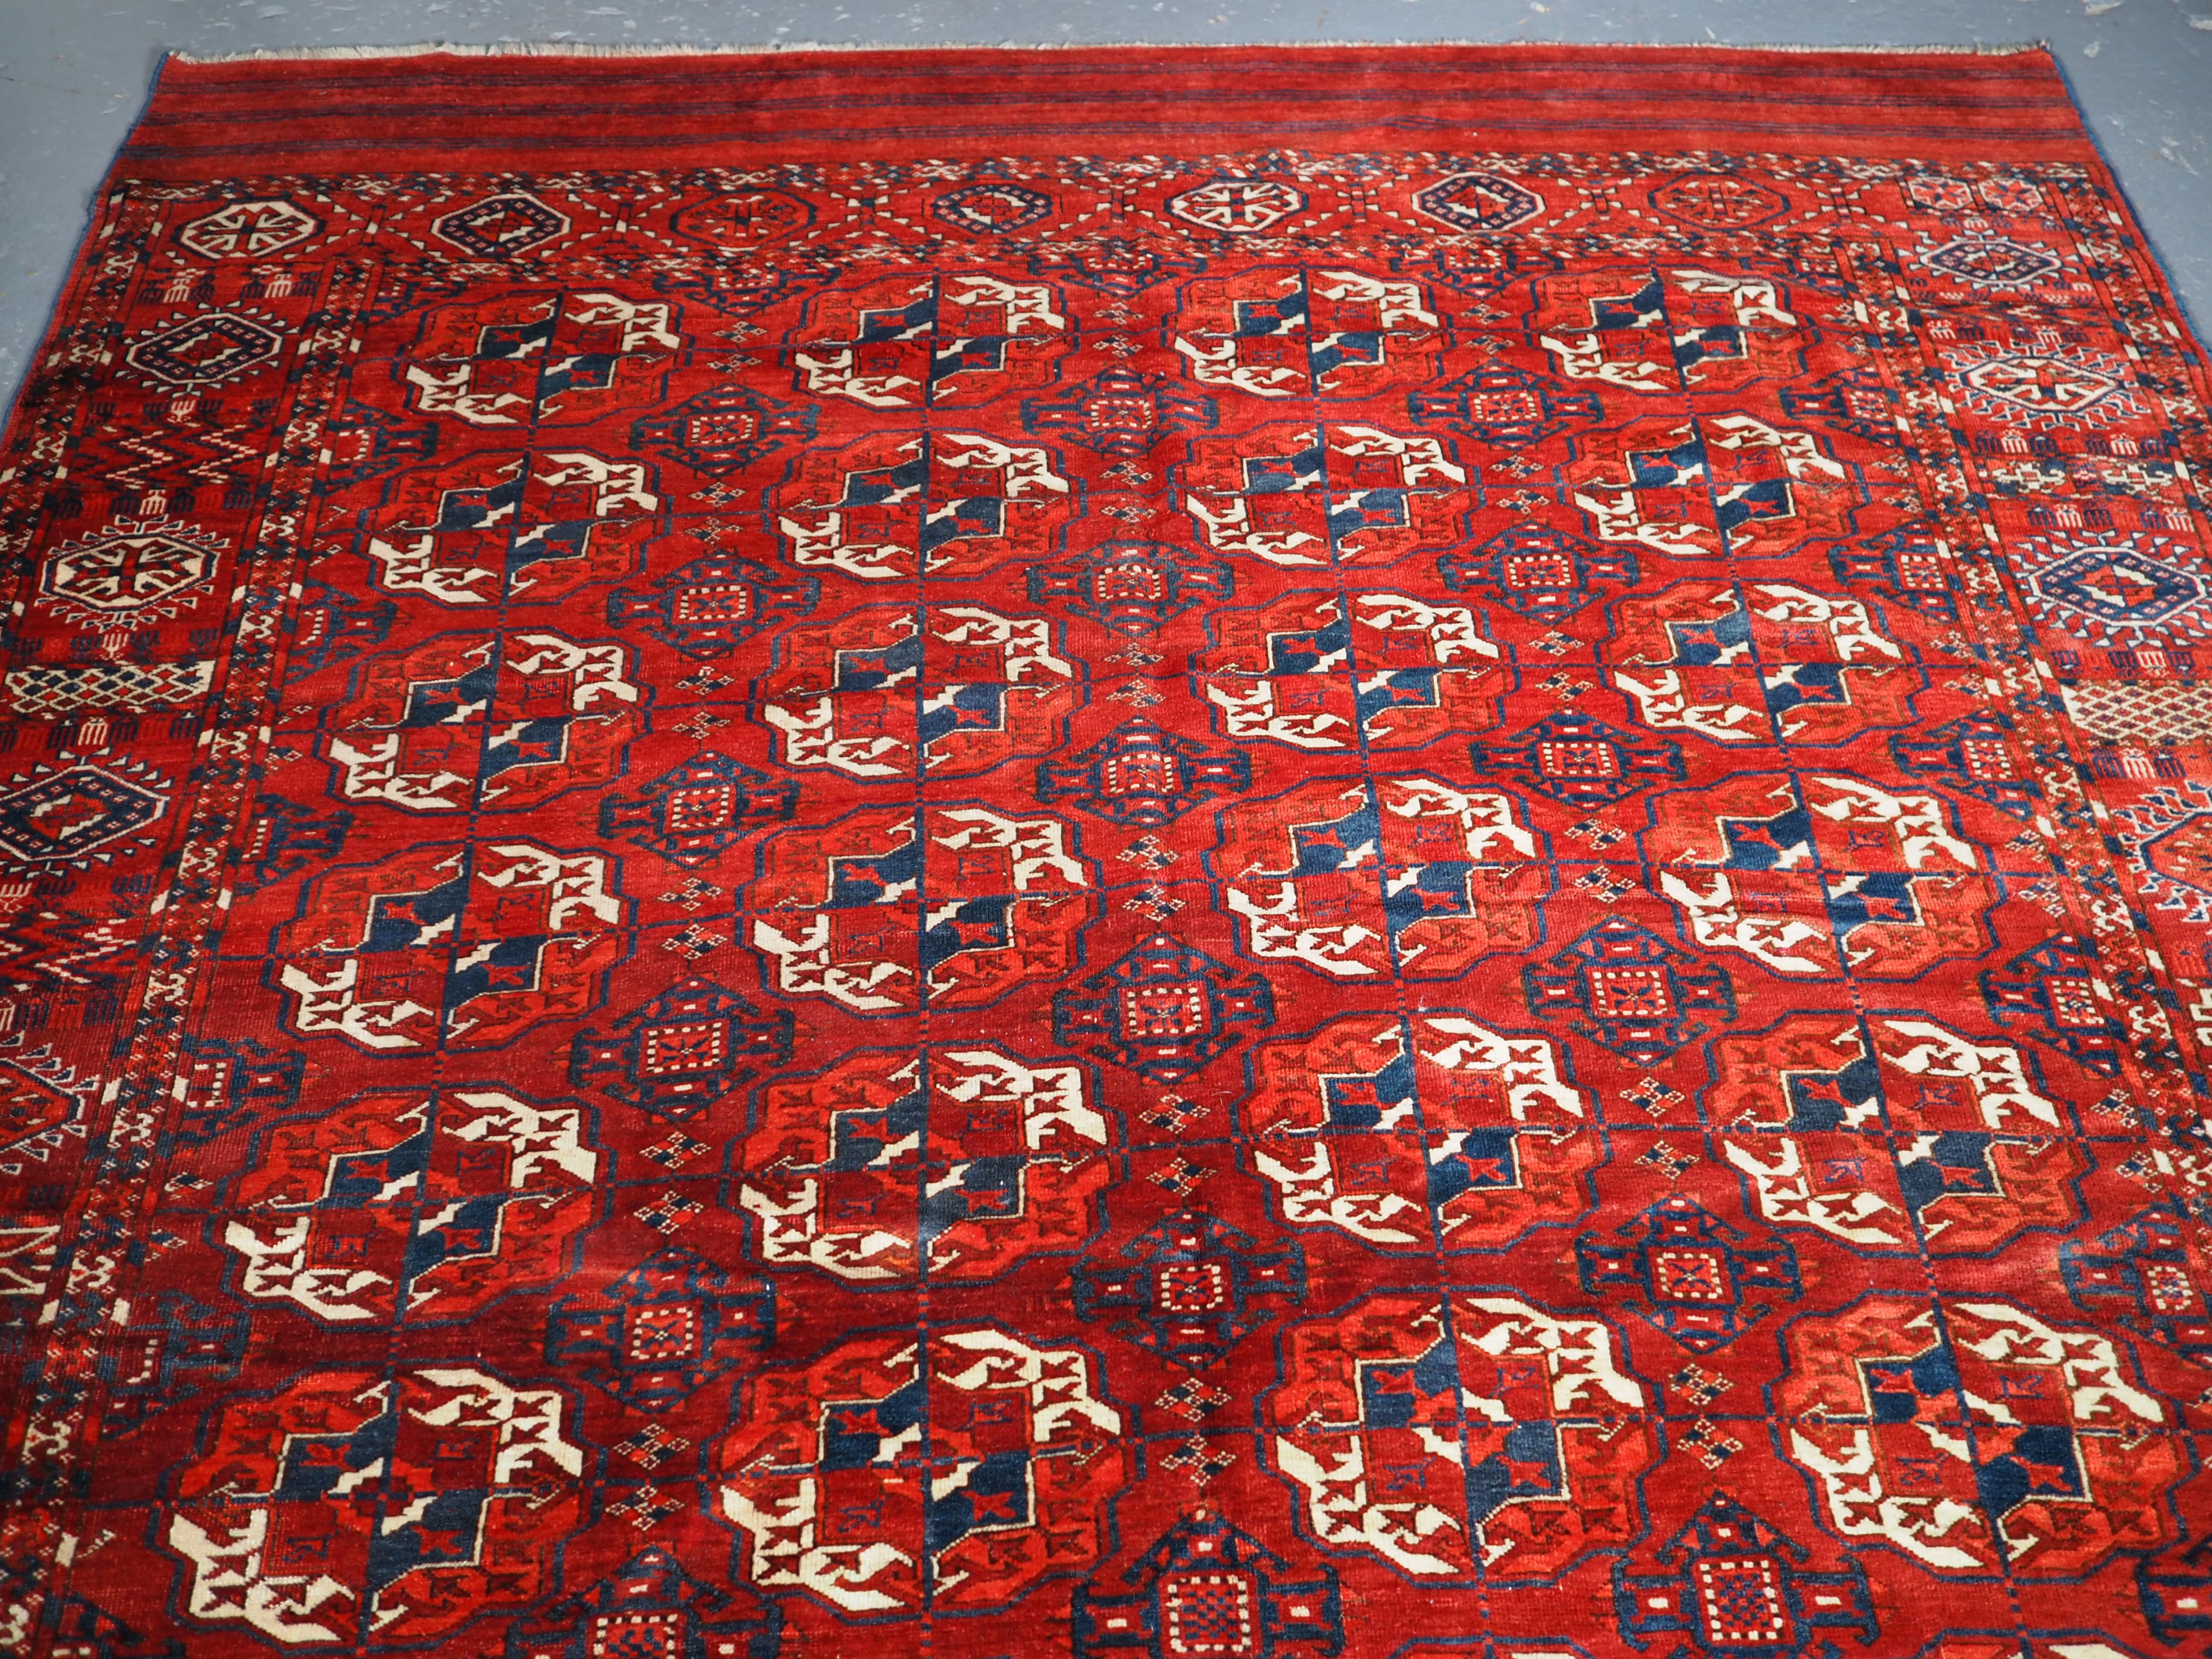 Un excellent tapis principal turkmène Tekke de petite taille. Le champ rouge garance clair est orné de grands guls ronds bien dessinés de Tekke. La bordure est composée d'un motif de soleil et d'octogones. Notez les panneaux elem empilés à chaque